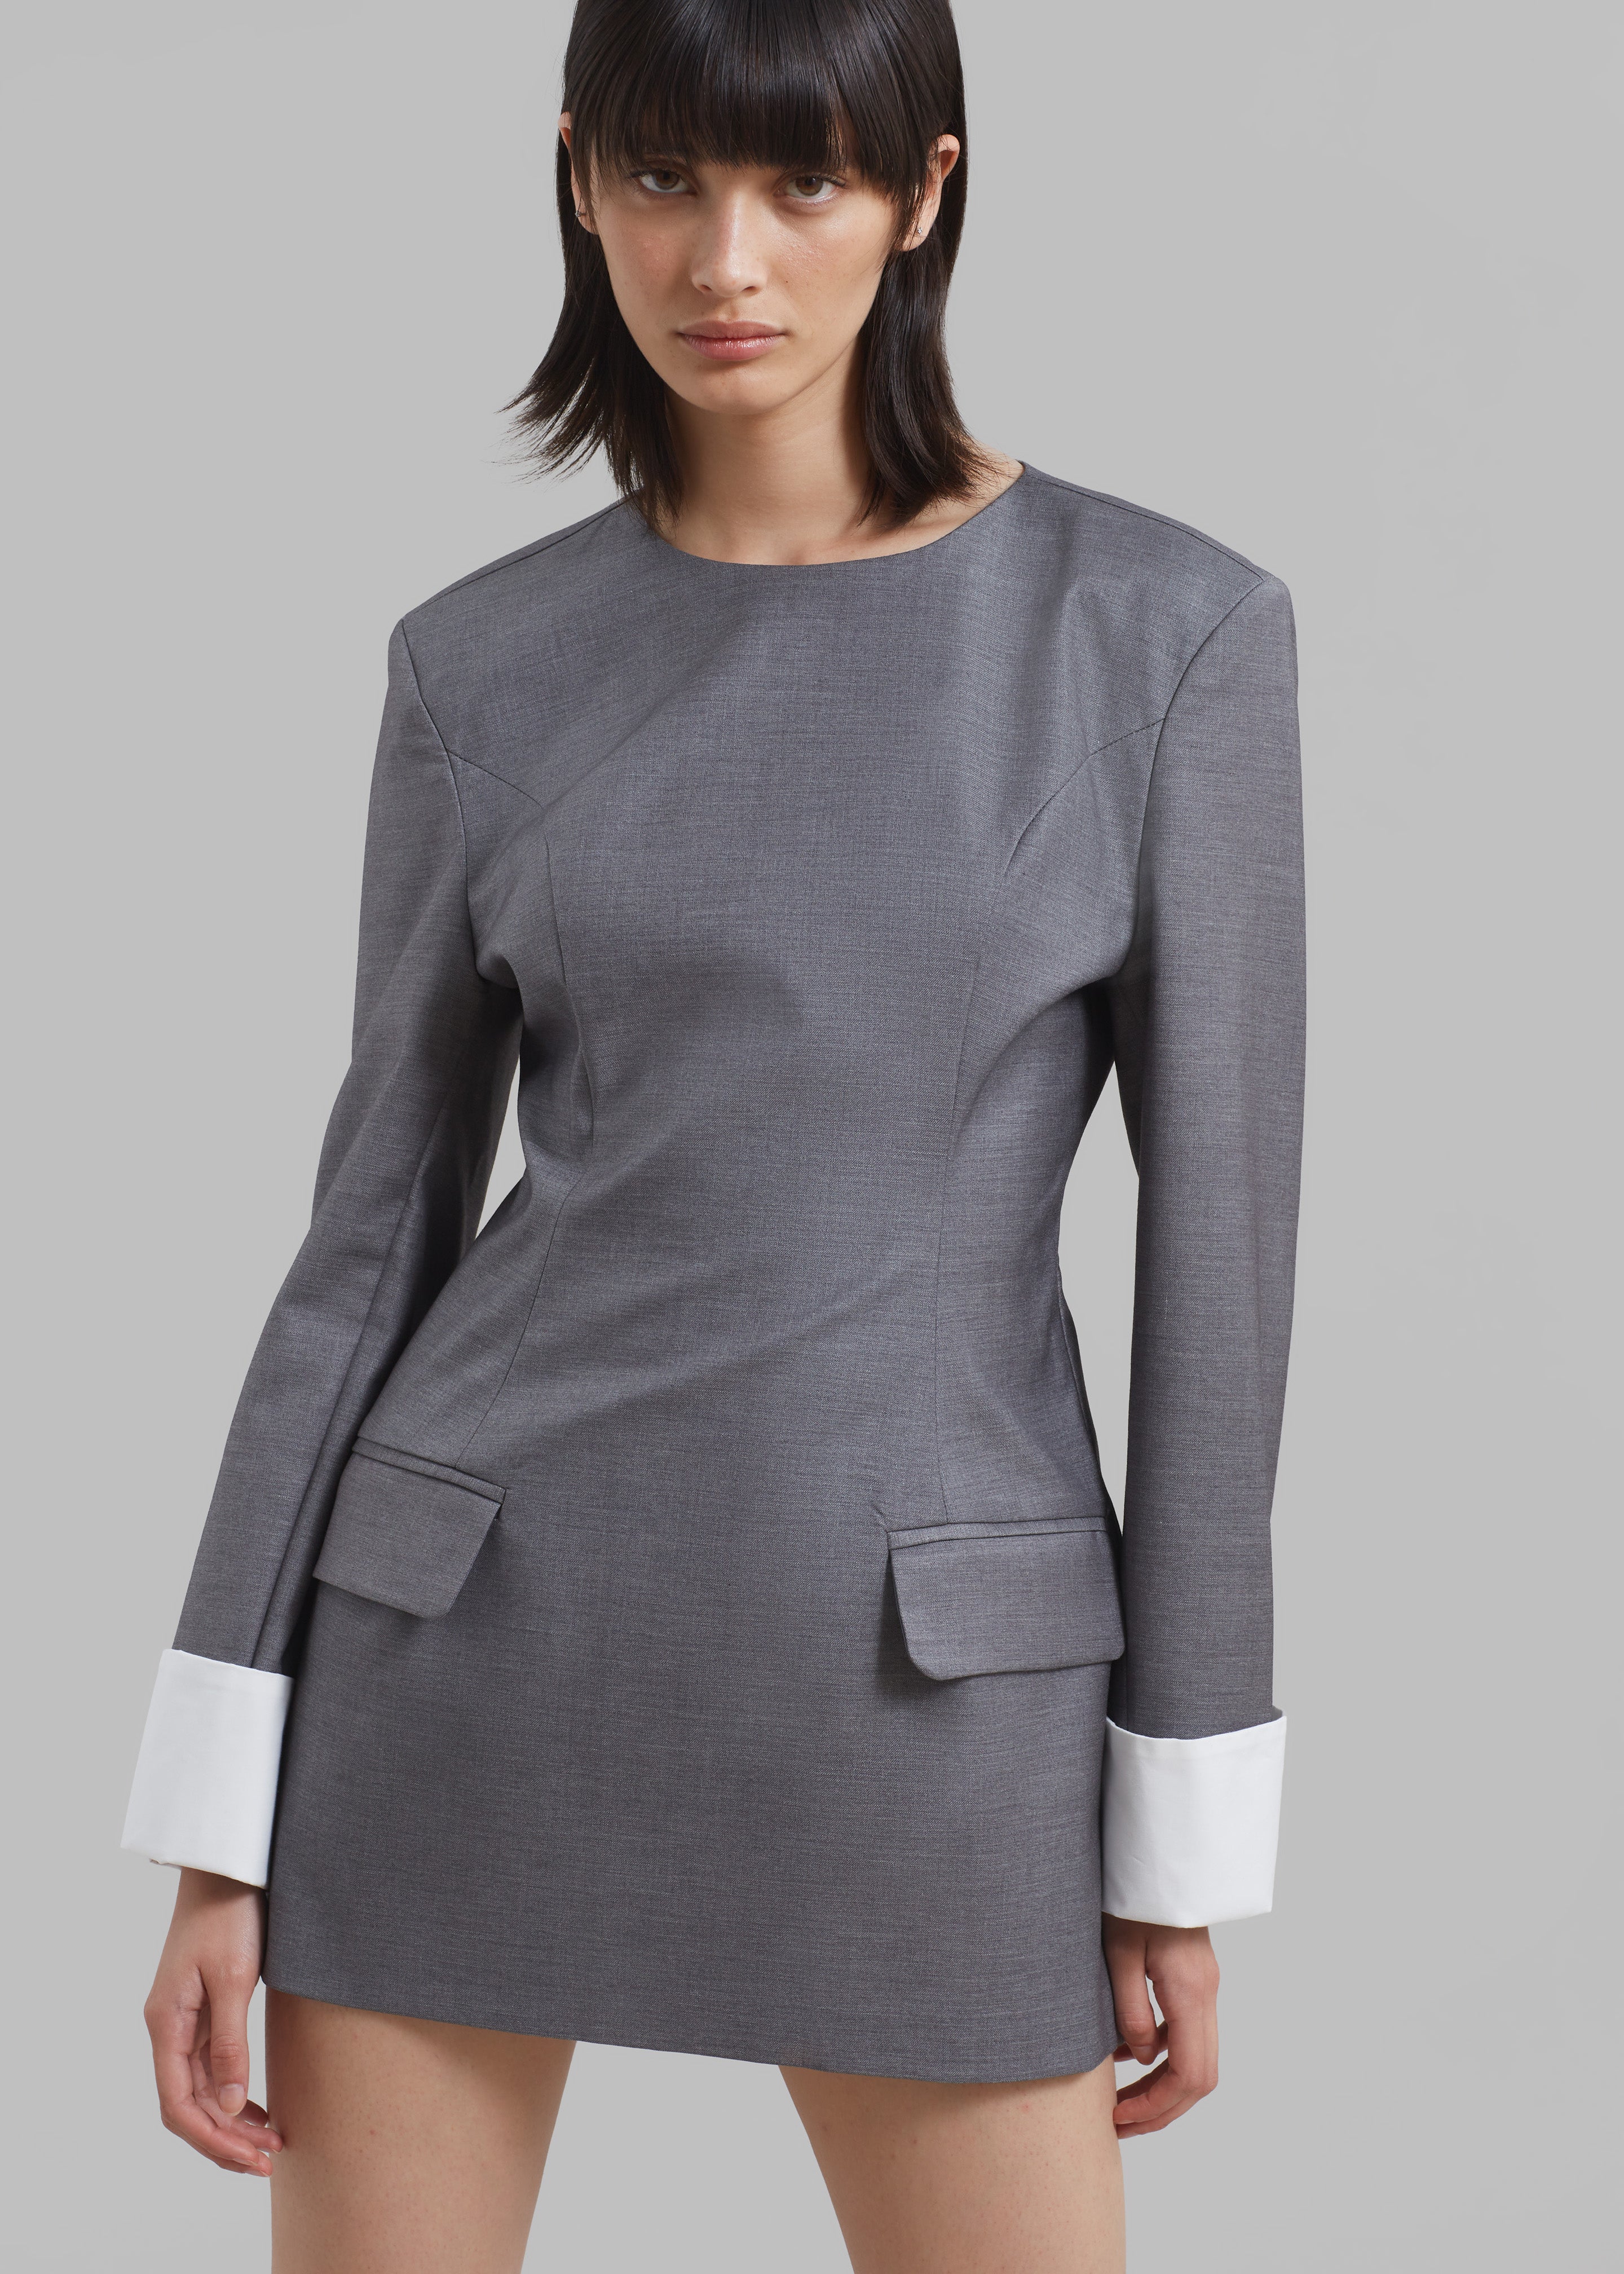 Buy RIGO Pure Cotton Half Sleeve/Below Knee Grey Bodycon Women's Dress at  Amazon.in